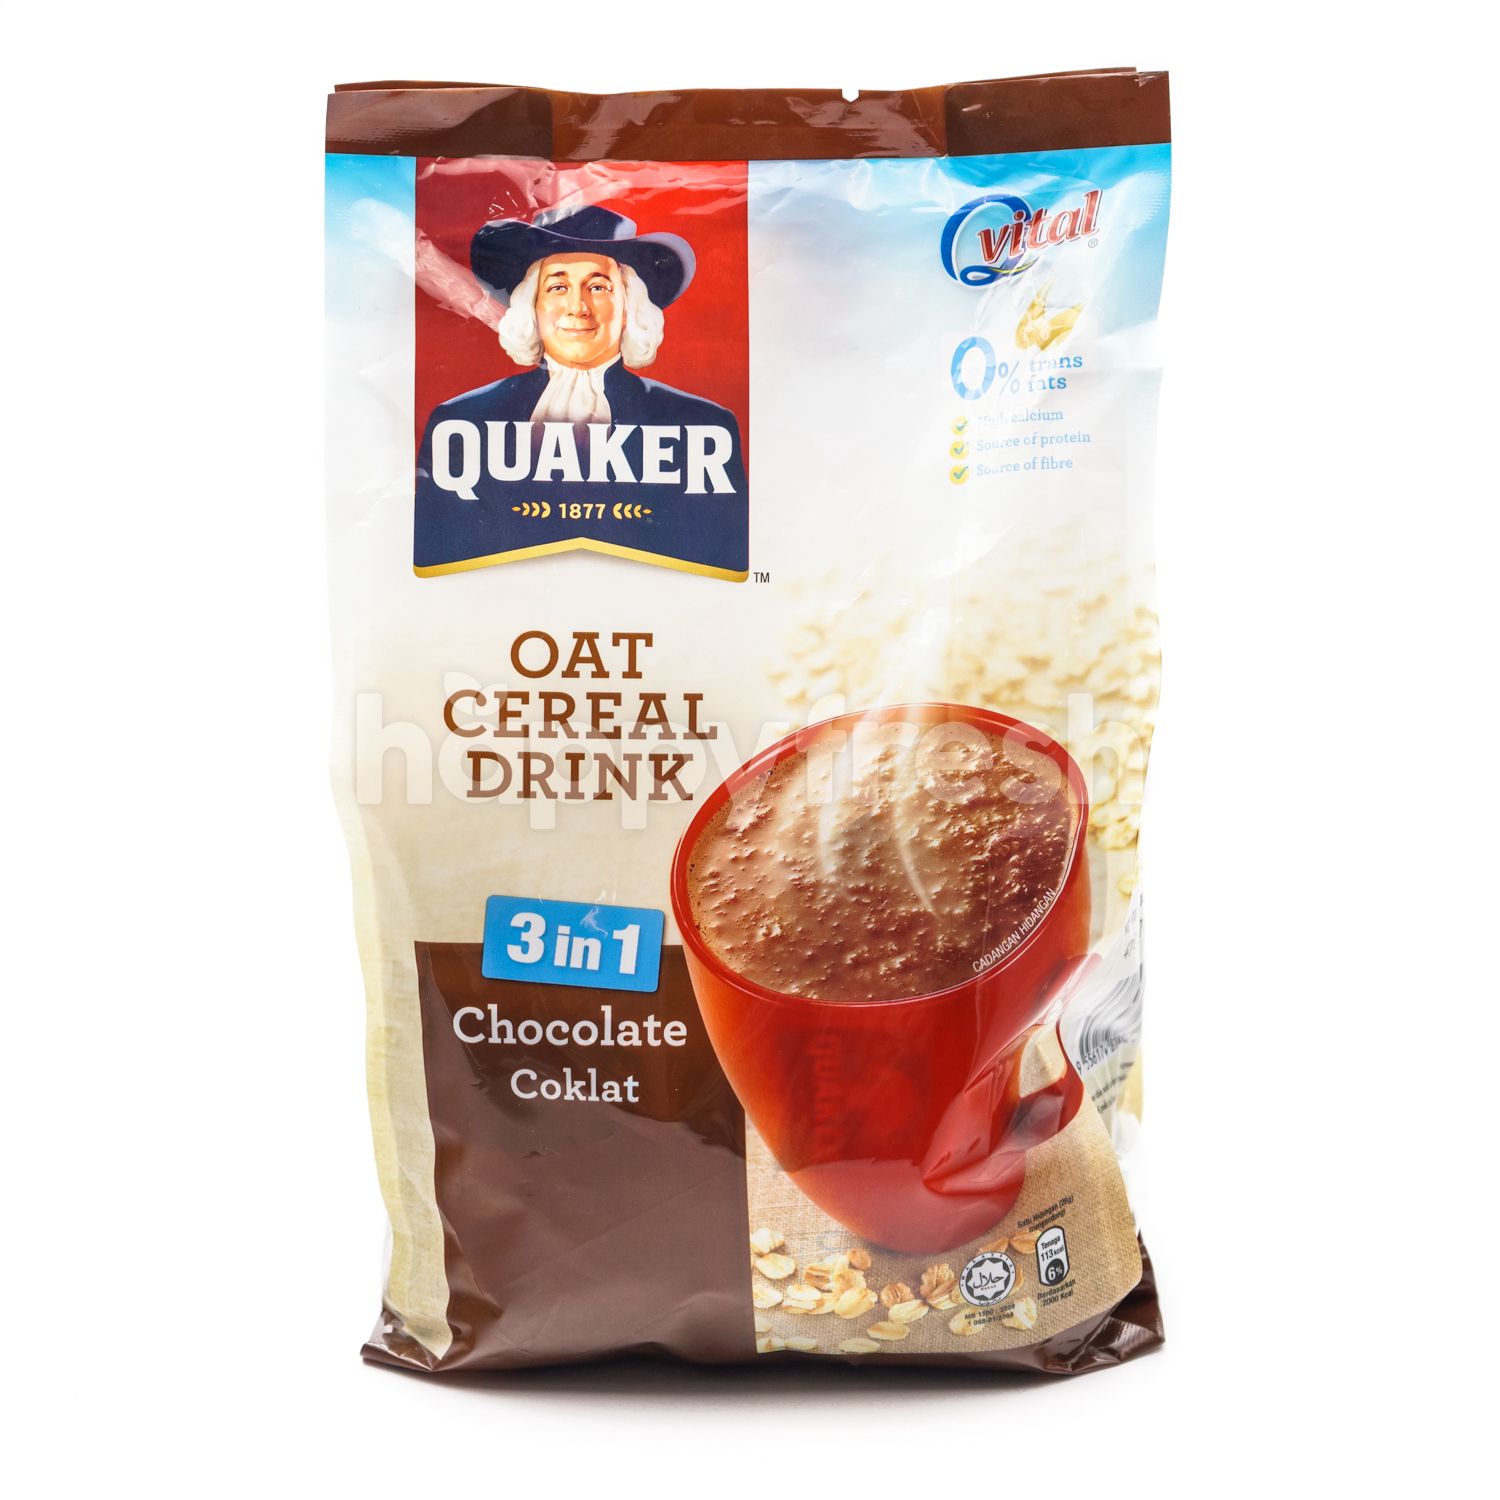 Beli Quaker Oat Cereal Drink dari Giant Hypermarket - HappyFresh